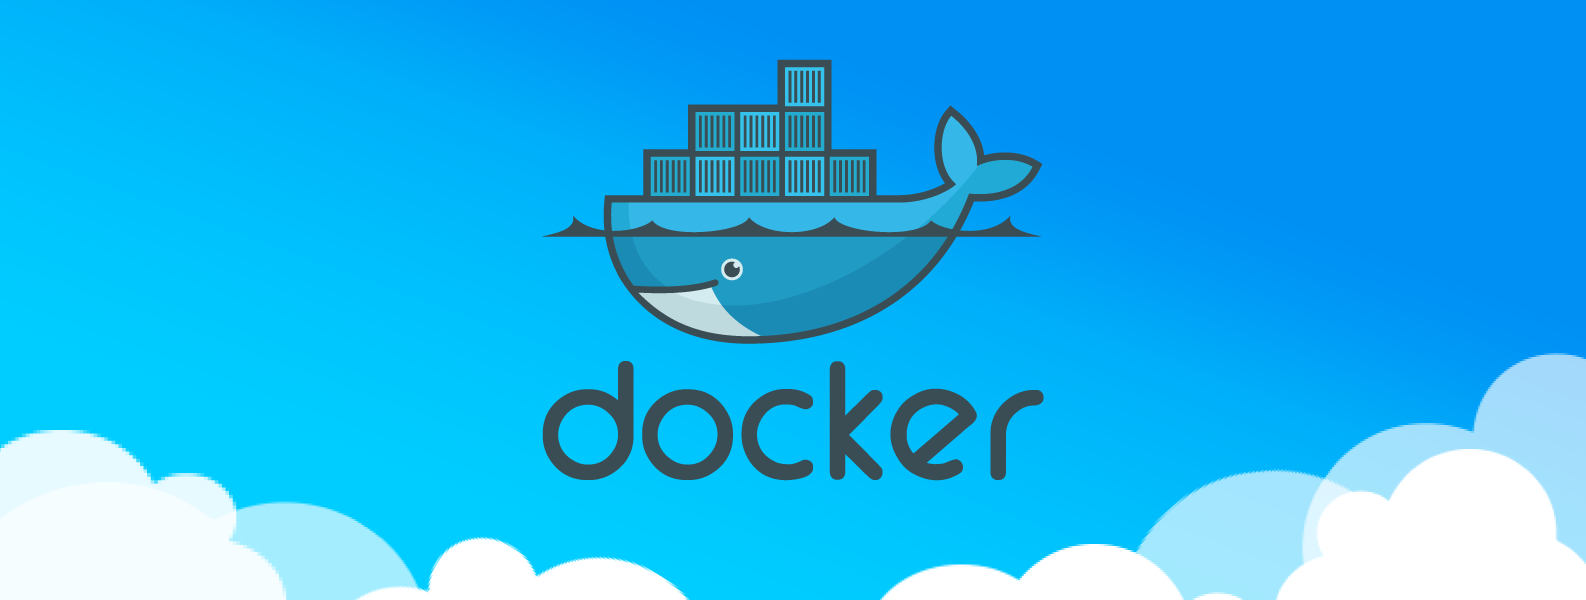 В ближайшее время ожидается рост числа атак с использованием контейнеров Docker